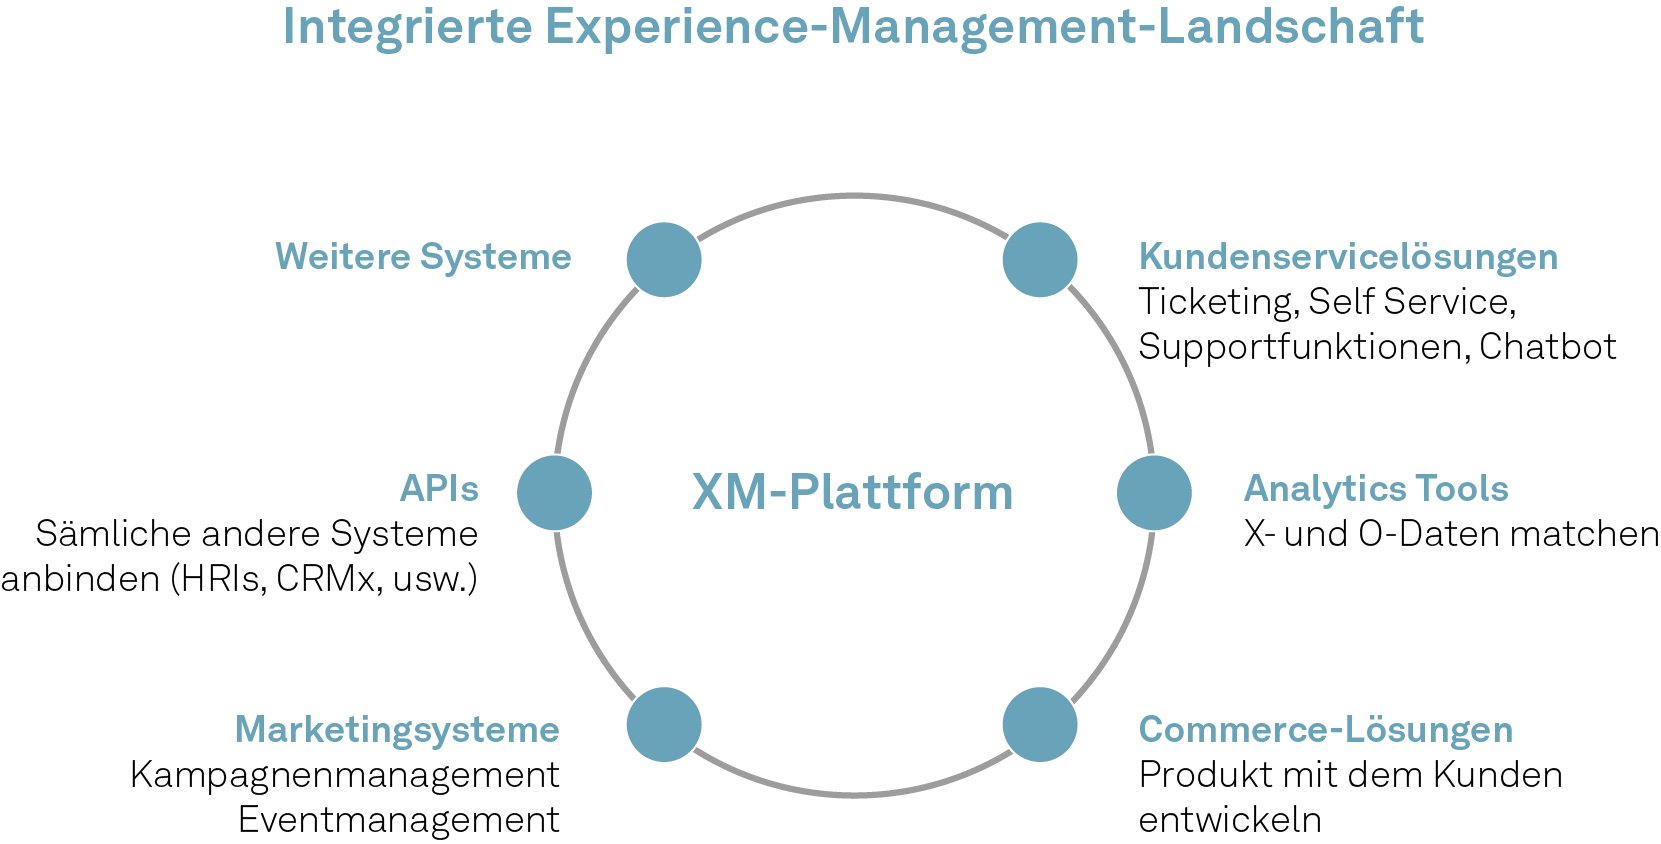 Integrierte Experience Management Landschaft